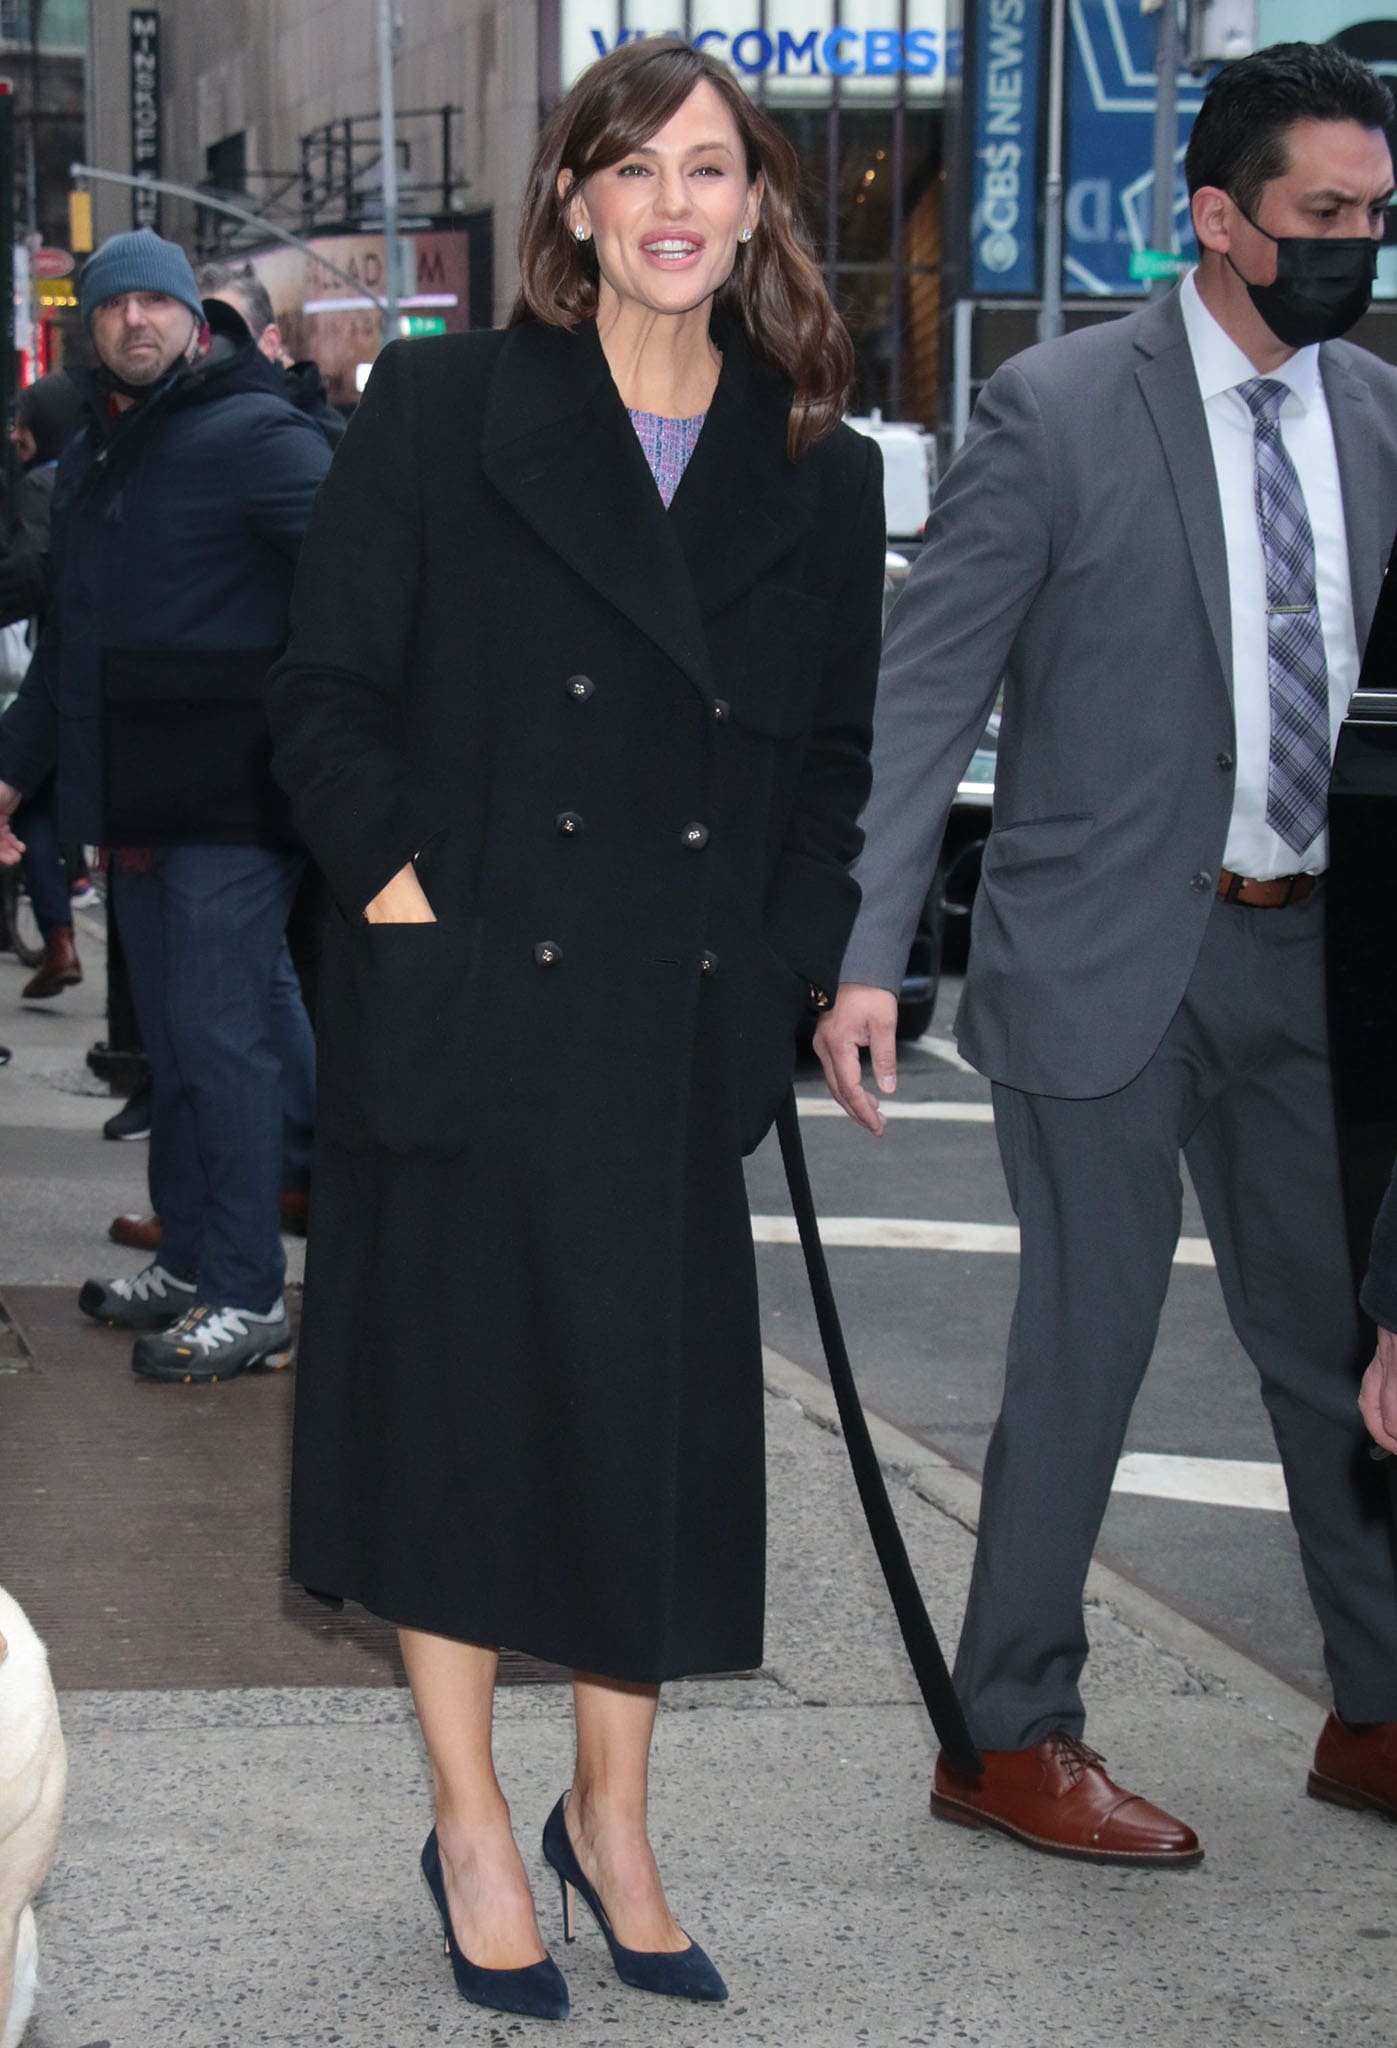 Jennifer Garner outside the GMA studios bundled up in a trench coat